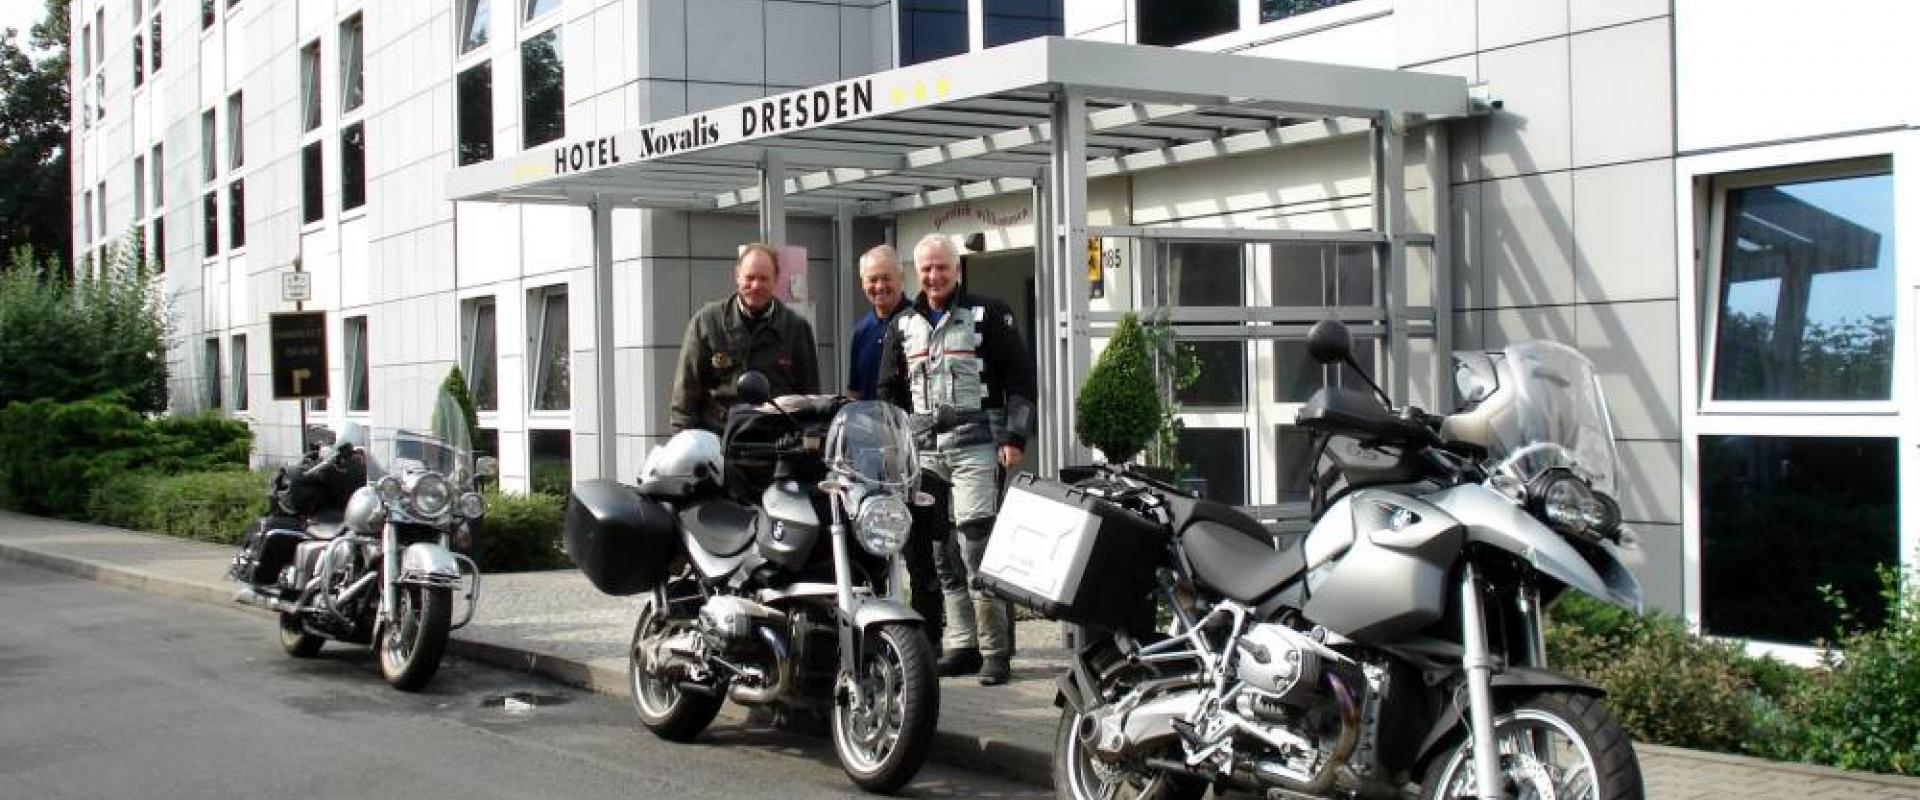 14265 Motorrad Hotel Novalis in Sachsen.jpg